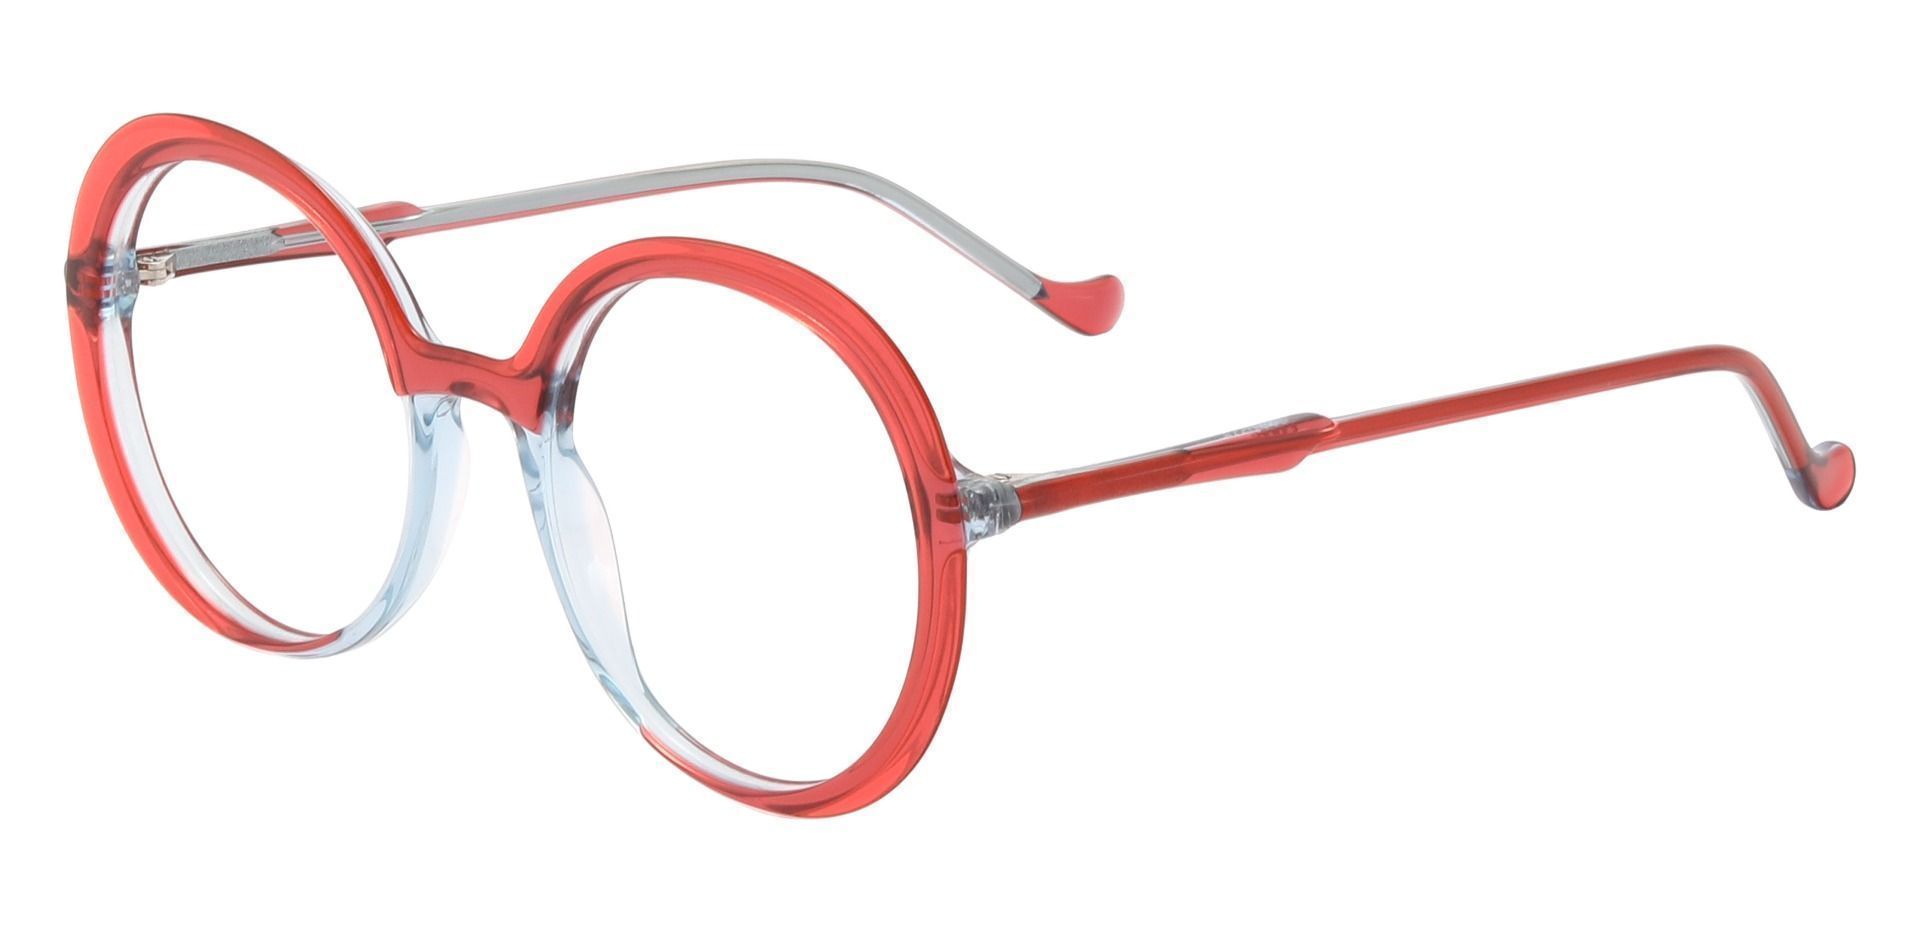 Peralta Round Prescription Glasses - Red